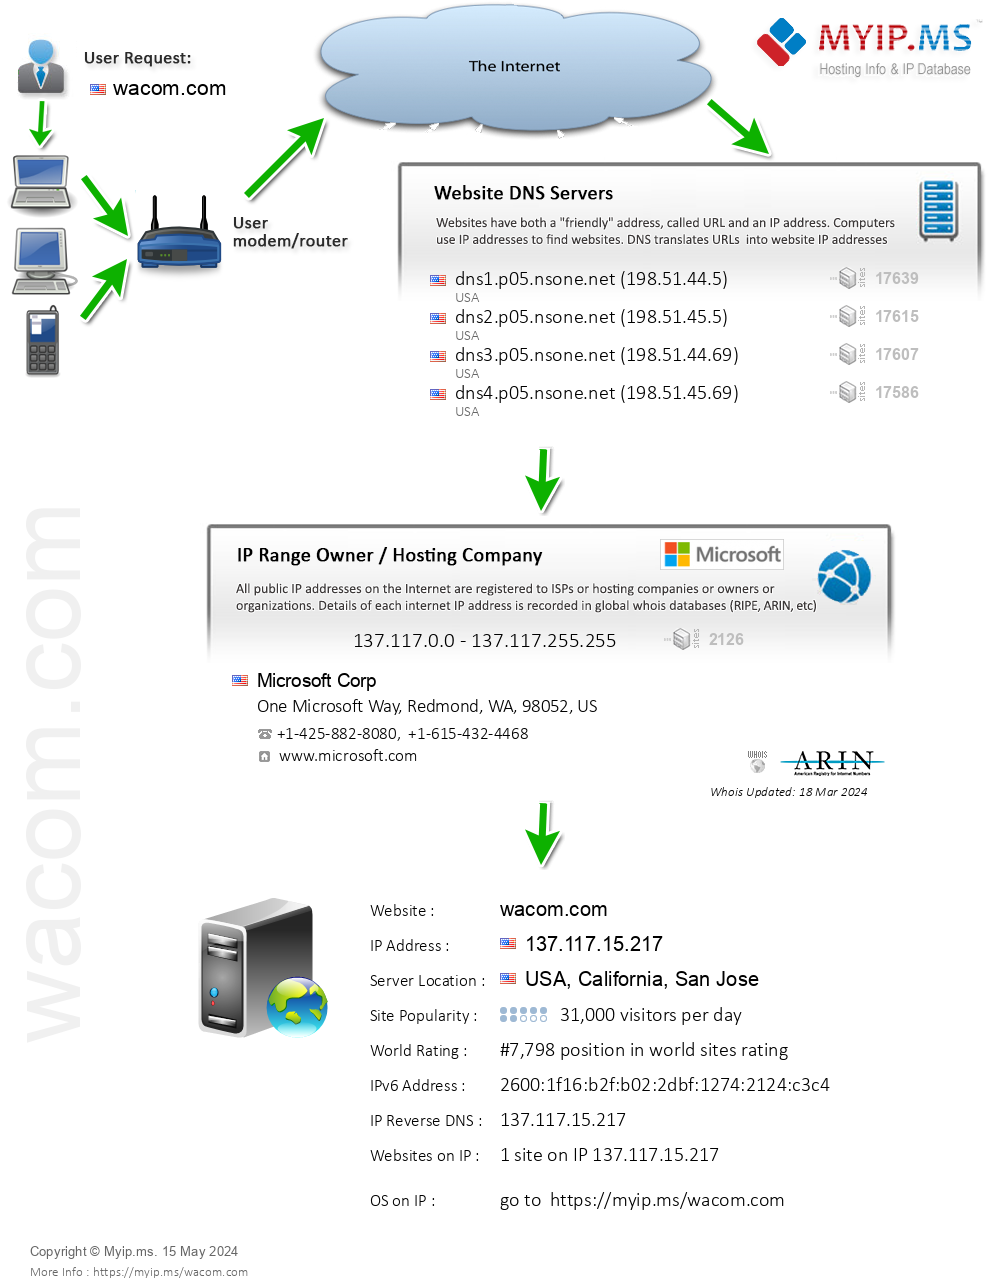 Wacom.com - Website Hosting Visual IP Diagram